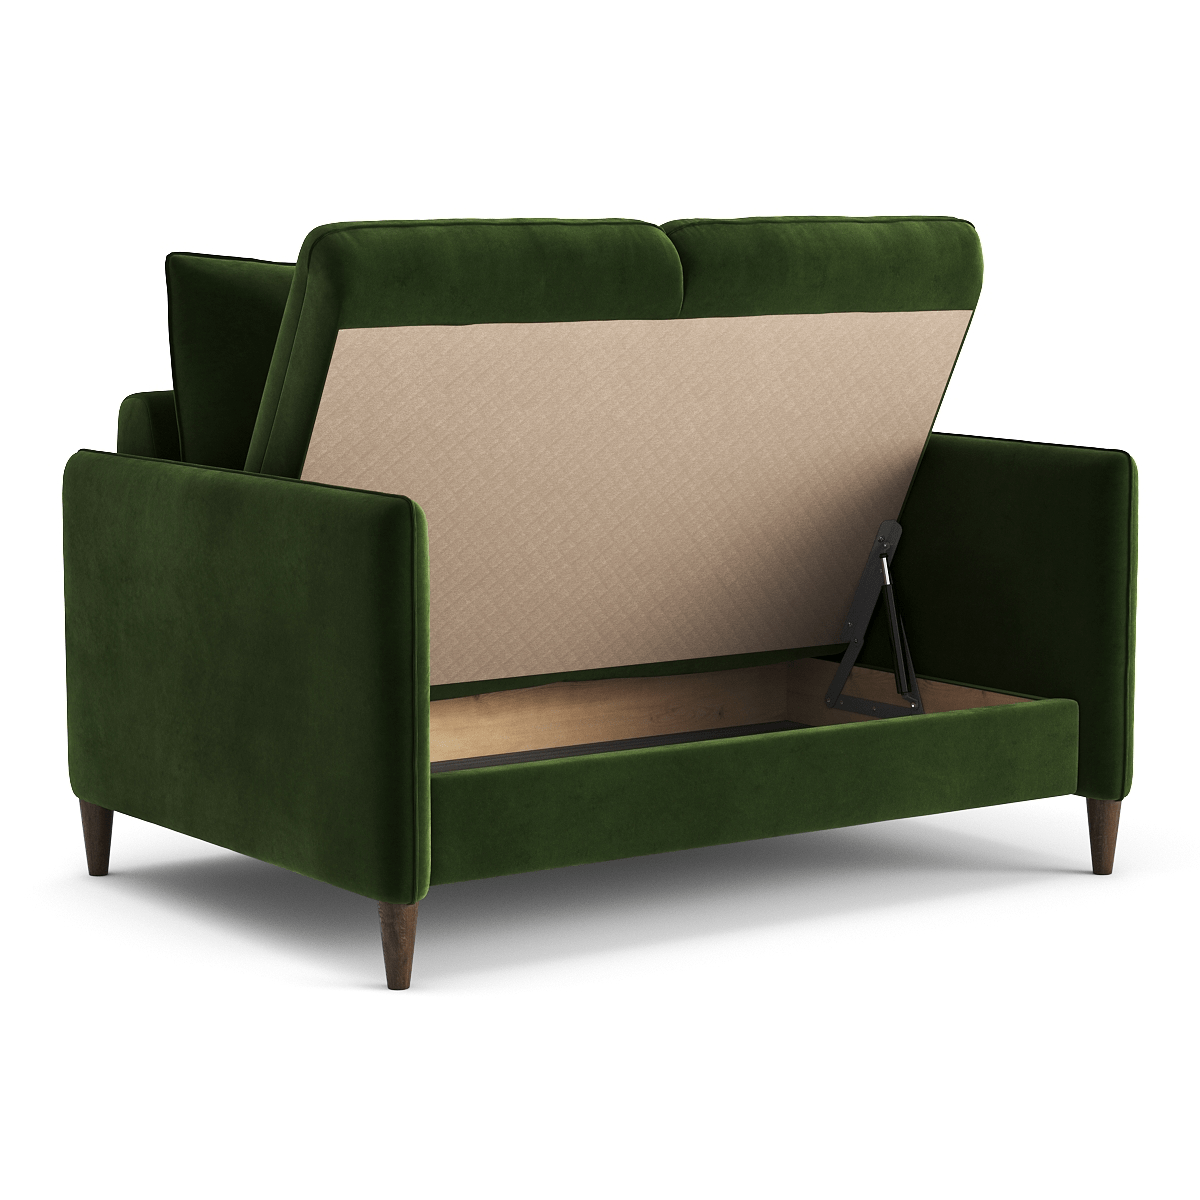 Мебель для квартиры-студии: 10 современных вариантов от SKDESIGN: фото NaN